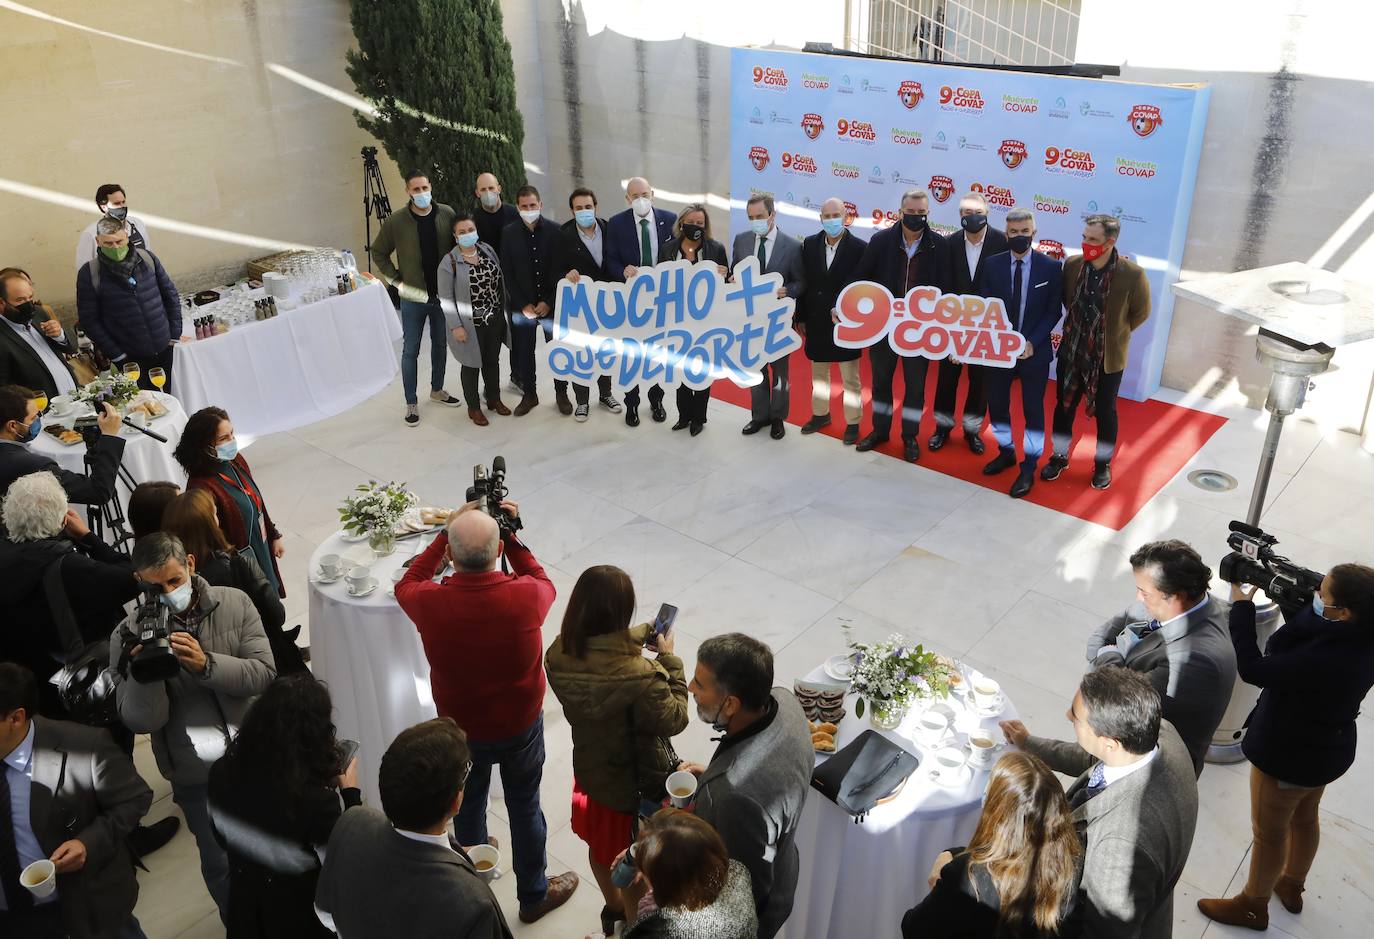 La presentación de la Copa Covap en Córdoba, en imágenes